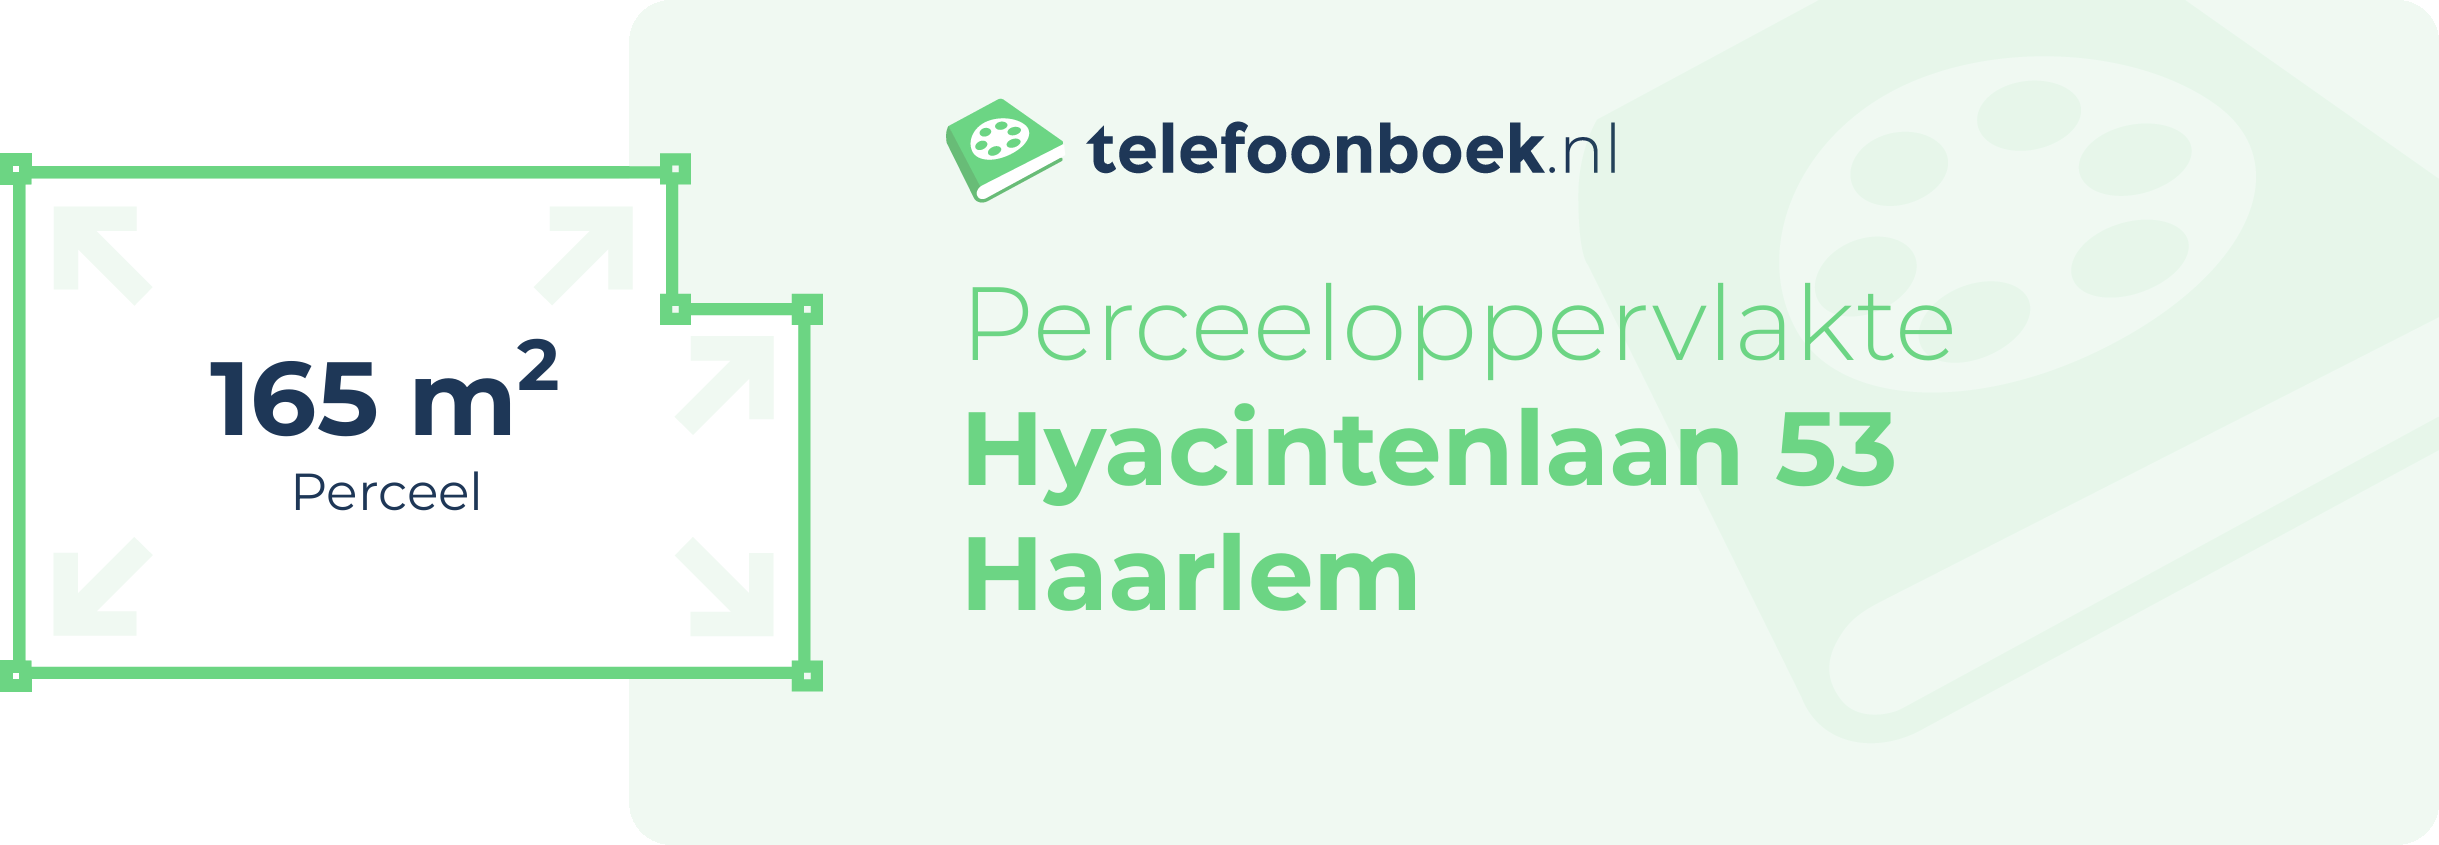 Perceeloppervlakte Hyacintenlaan 53 Haarlem